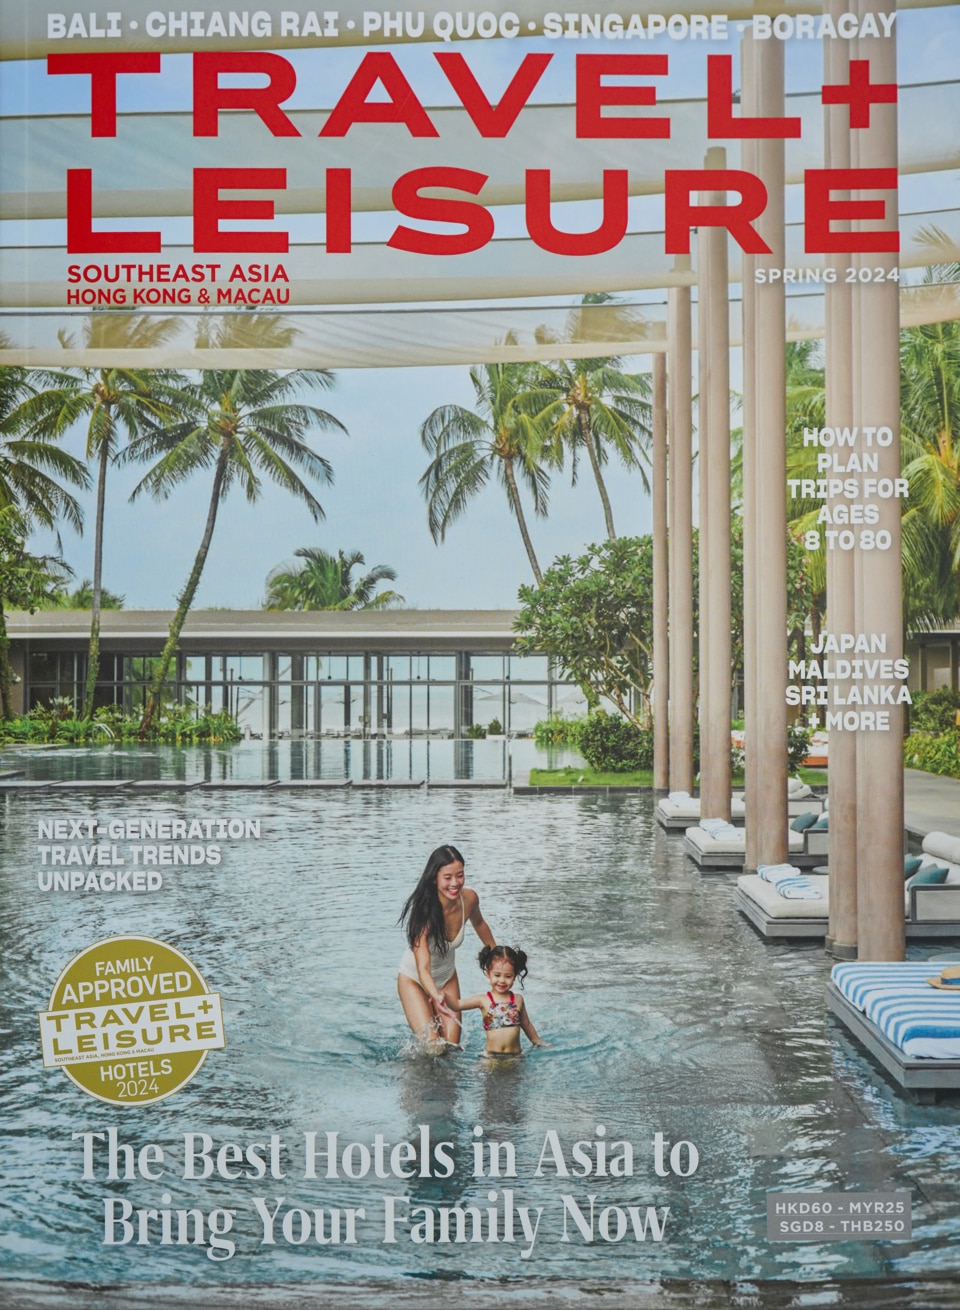 Regent Phu Quoc xuất hiện trên bìa tạp chí Travel+Leisure đồng thời nằm trong danh sách uy tín “Family Approved” (khu nghỉ dưỡng phù hợp cho gia đình).